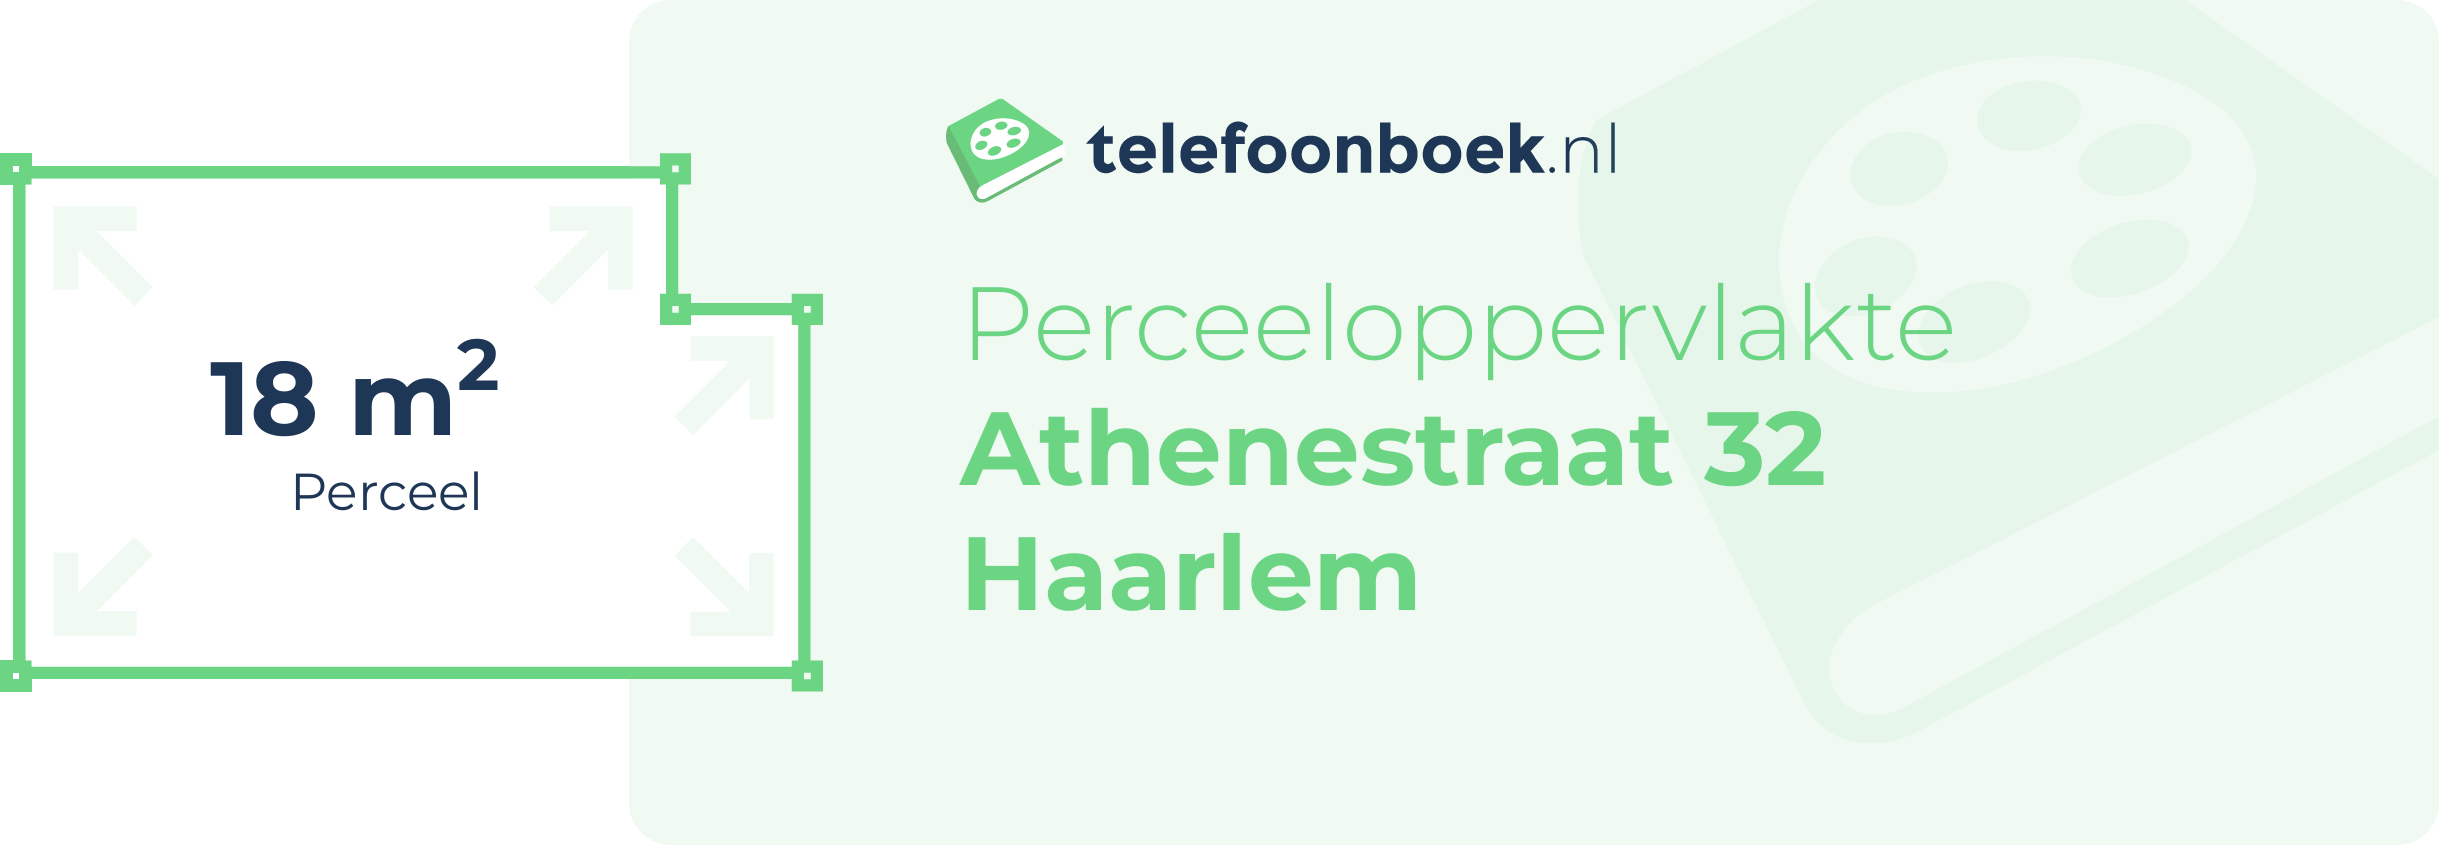 Perceeloppervlakte Athenestraat 32 Haarlem